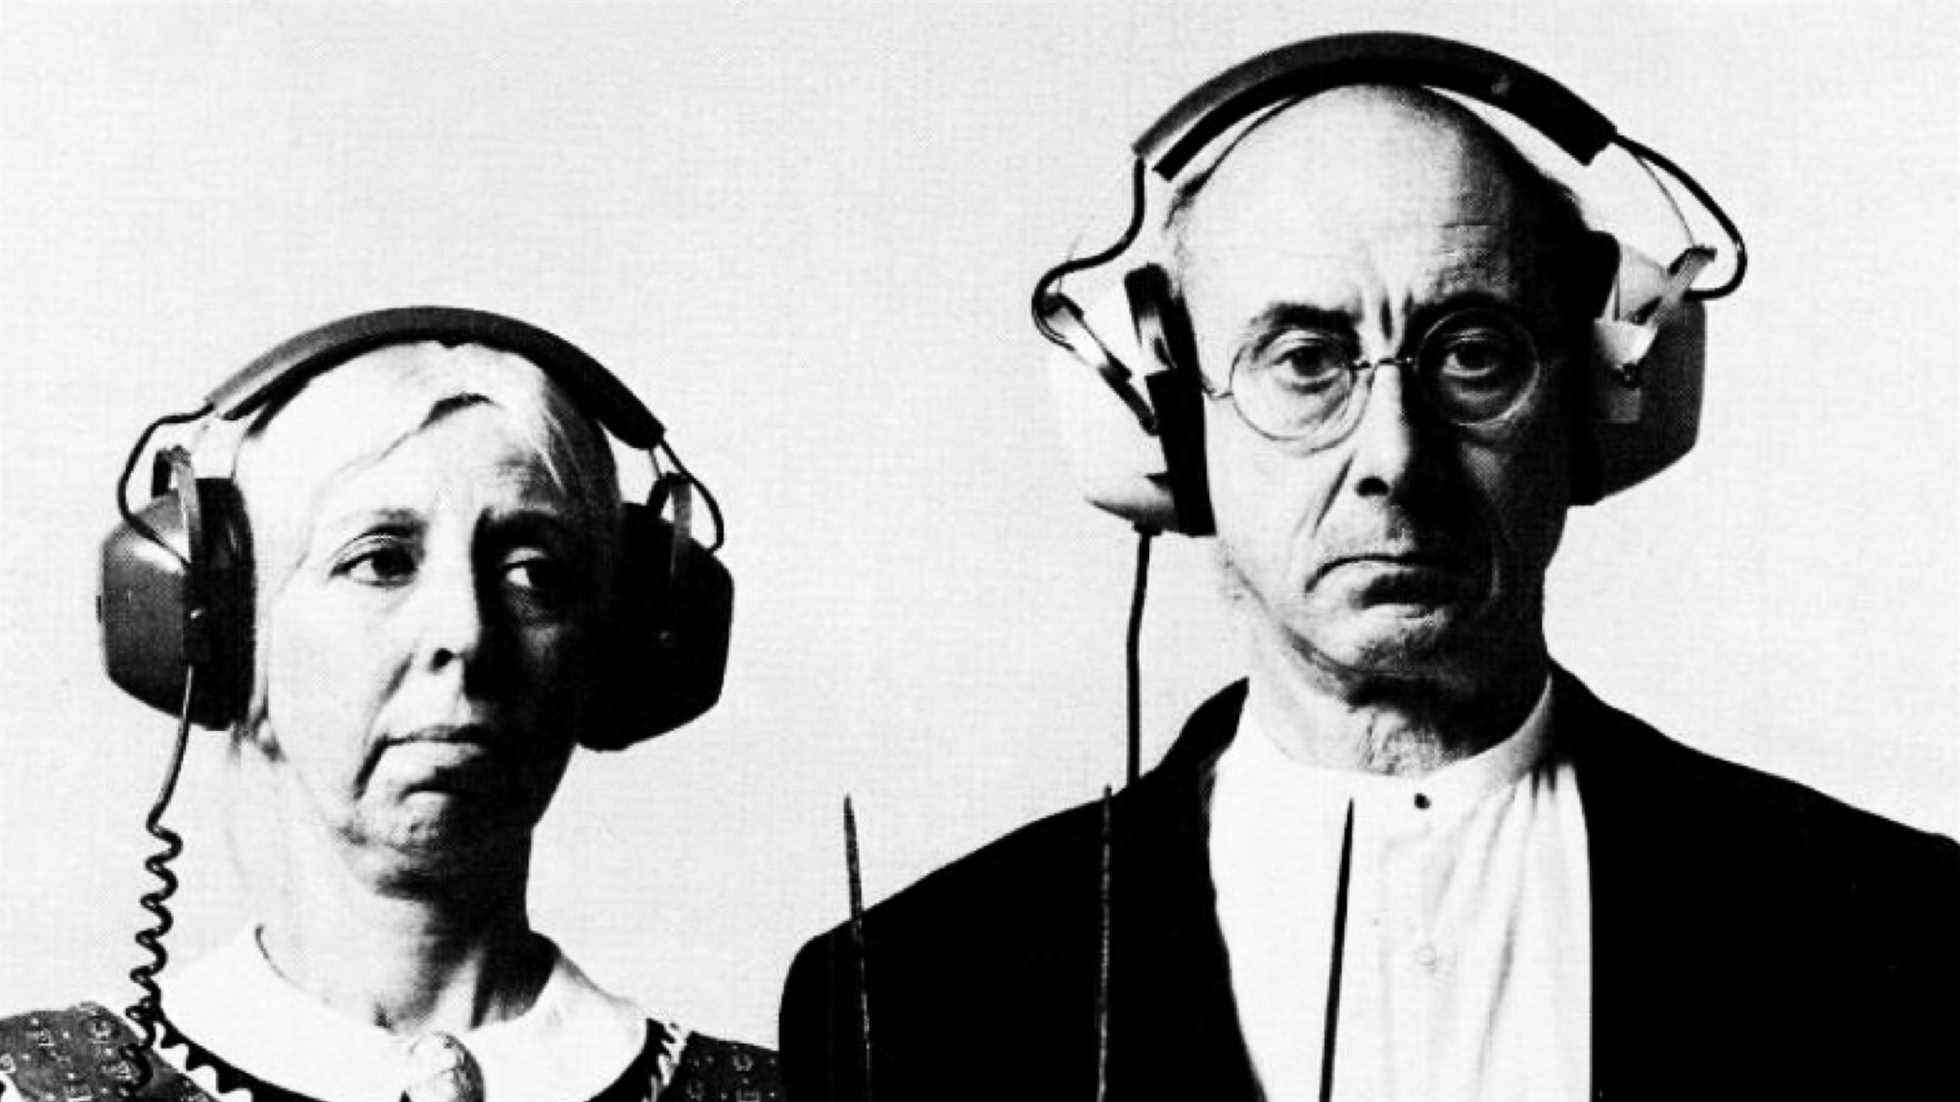 une publicité RCA 197s montrant deux personnes portant des écouteurs